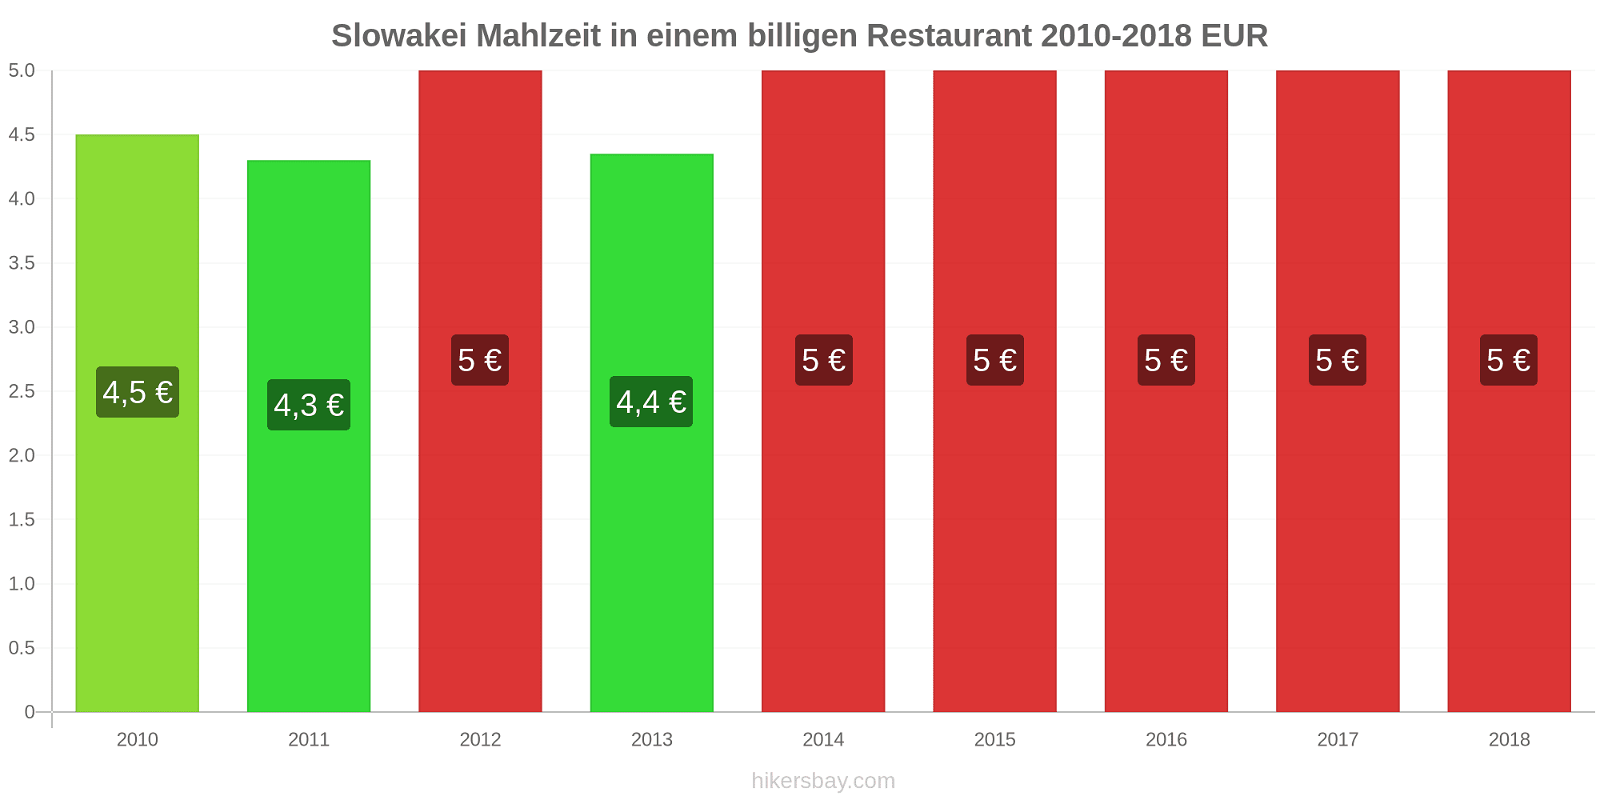 Slowakei Preisänderungen Mahlzeit in einem billigen Restaurant hikersbay.com